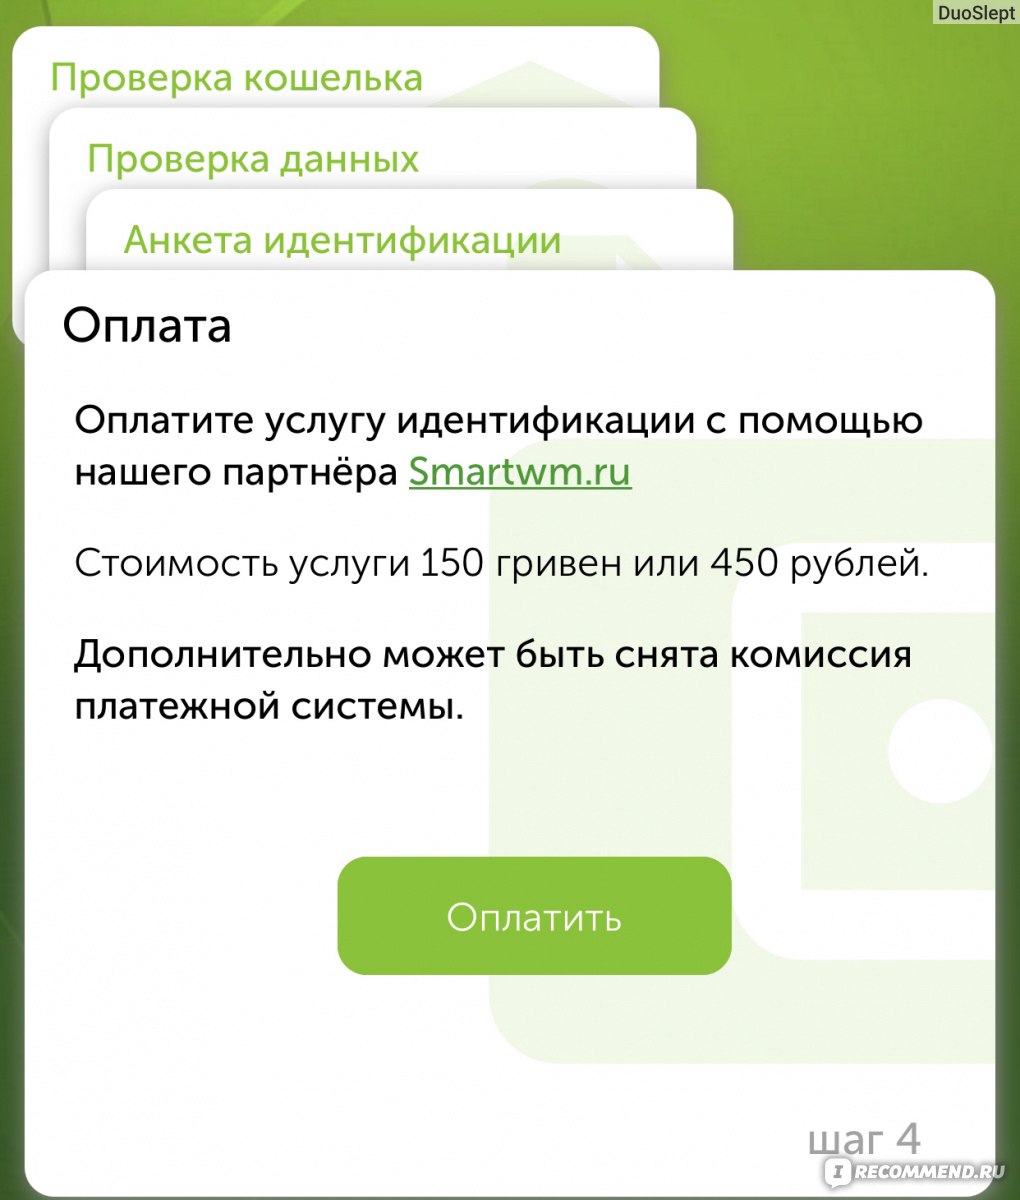 Интернет Магазин Оплата Qiwi Украина